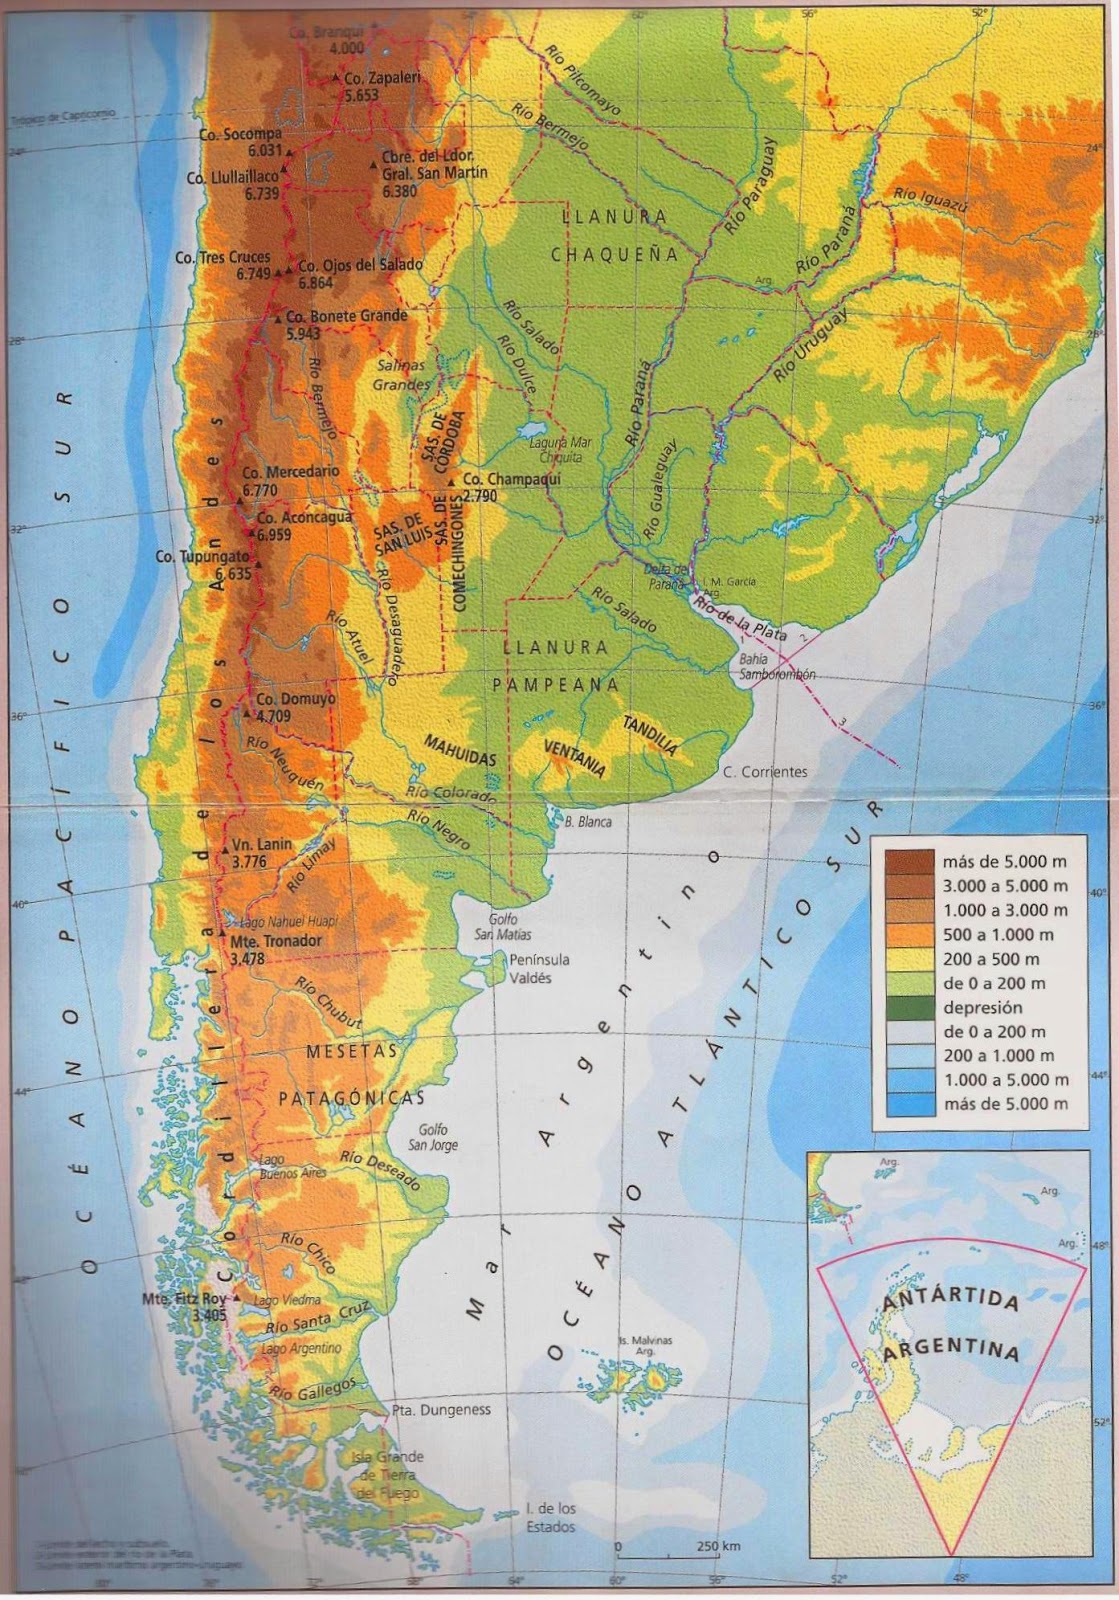 Mapa de la republica argentina